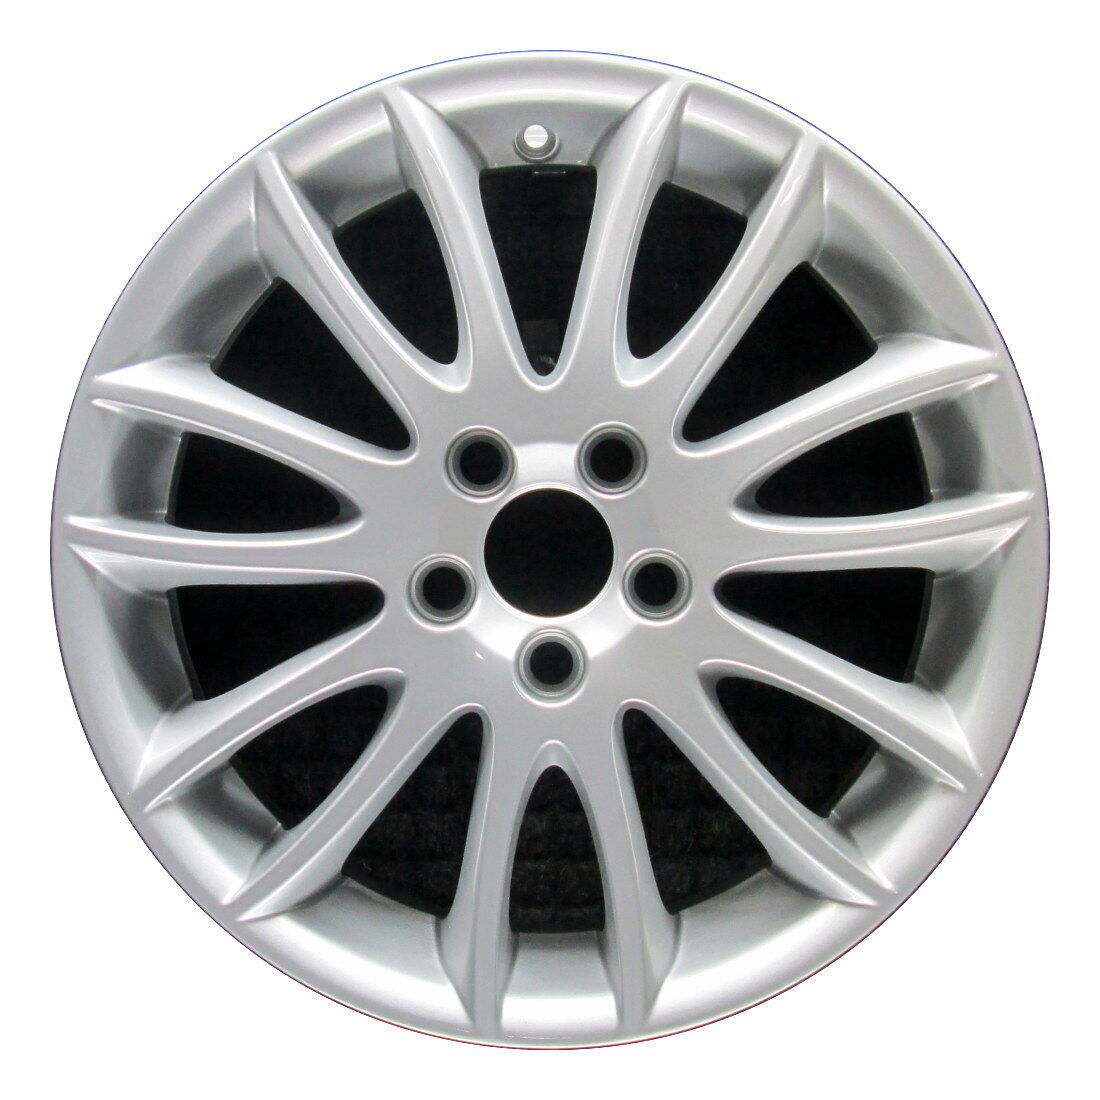 Wheel Rim Volvo C30 C70 S40 S50 S70 V50 17 2006-2012 312009954 Silver OE 70317